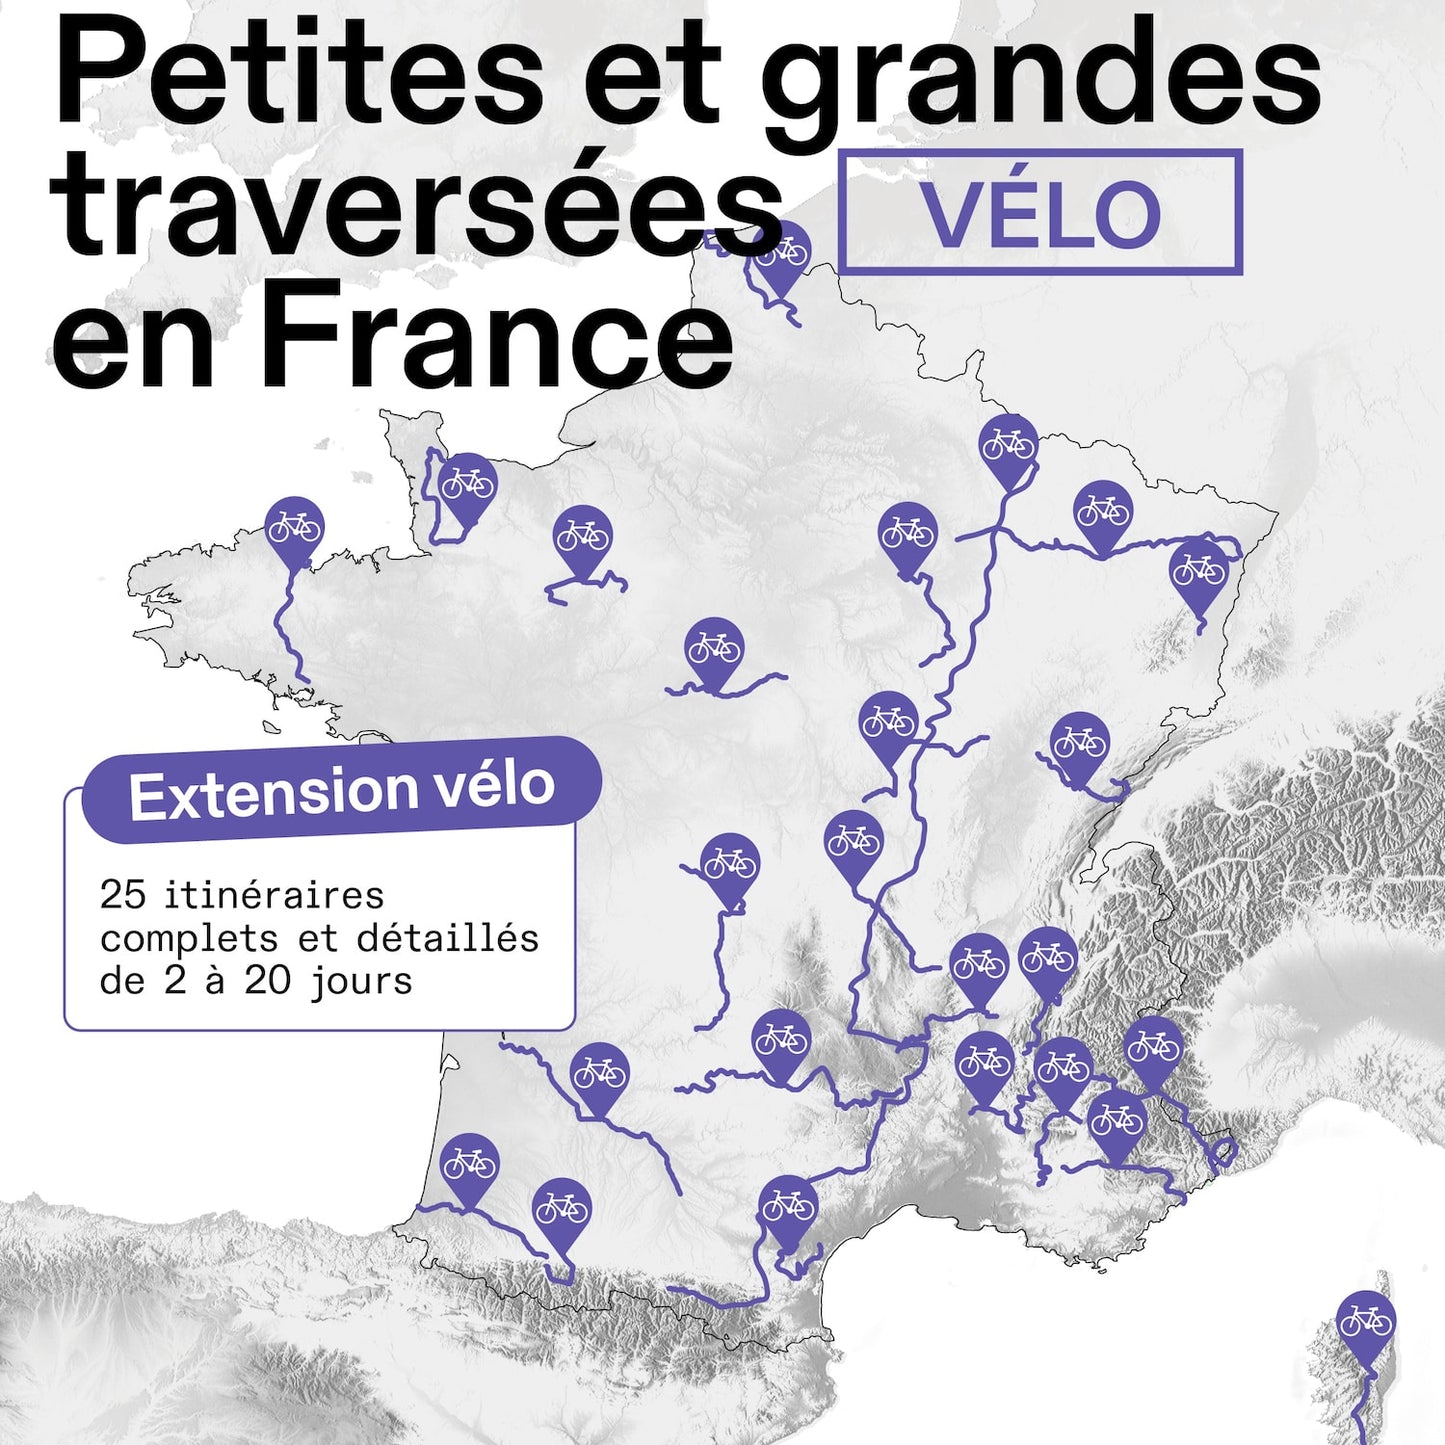 Extension vélo : petites et grandes traversées en France